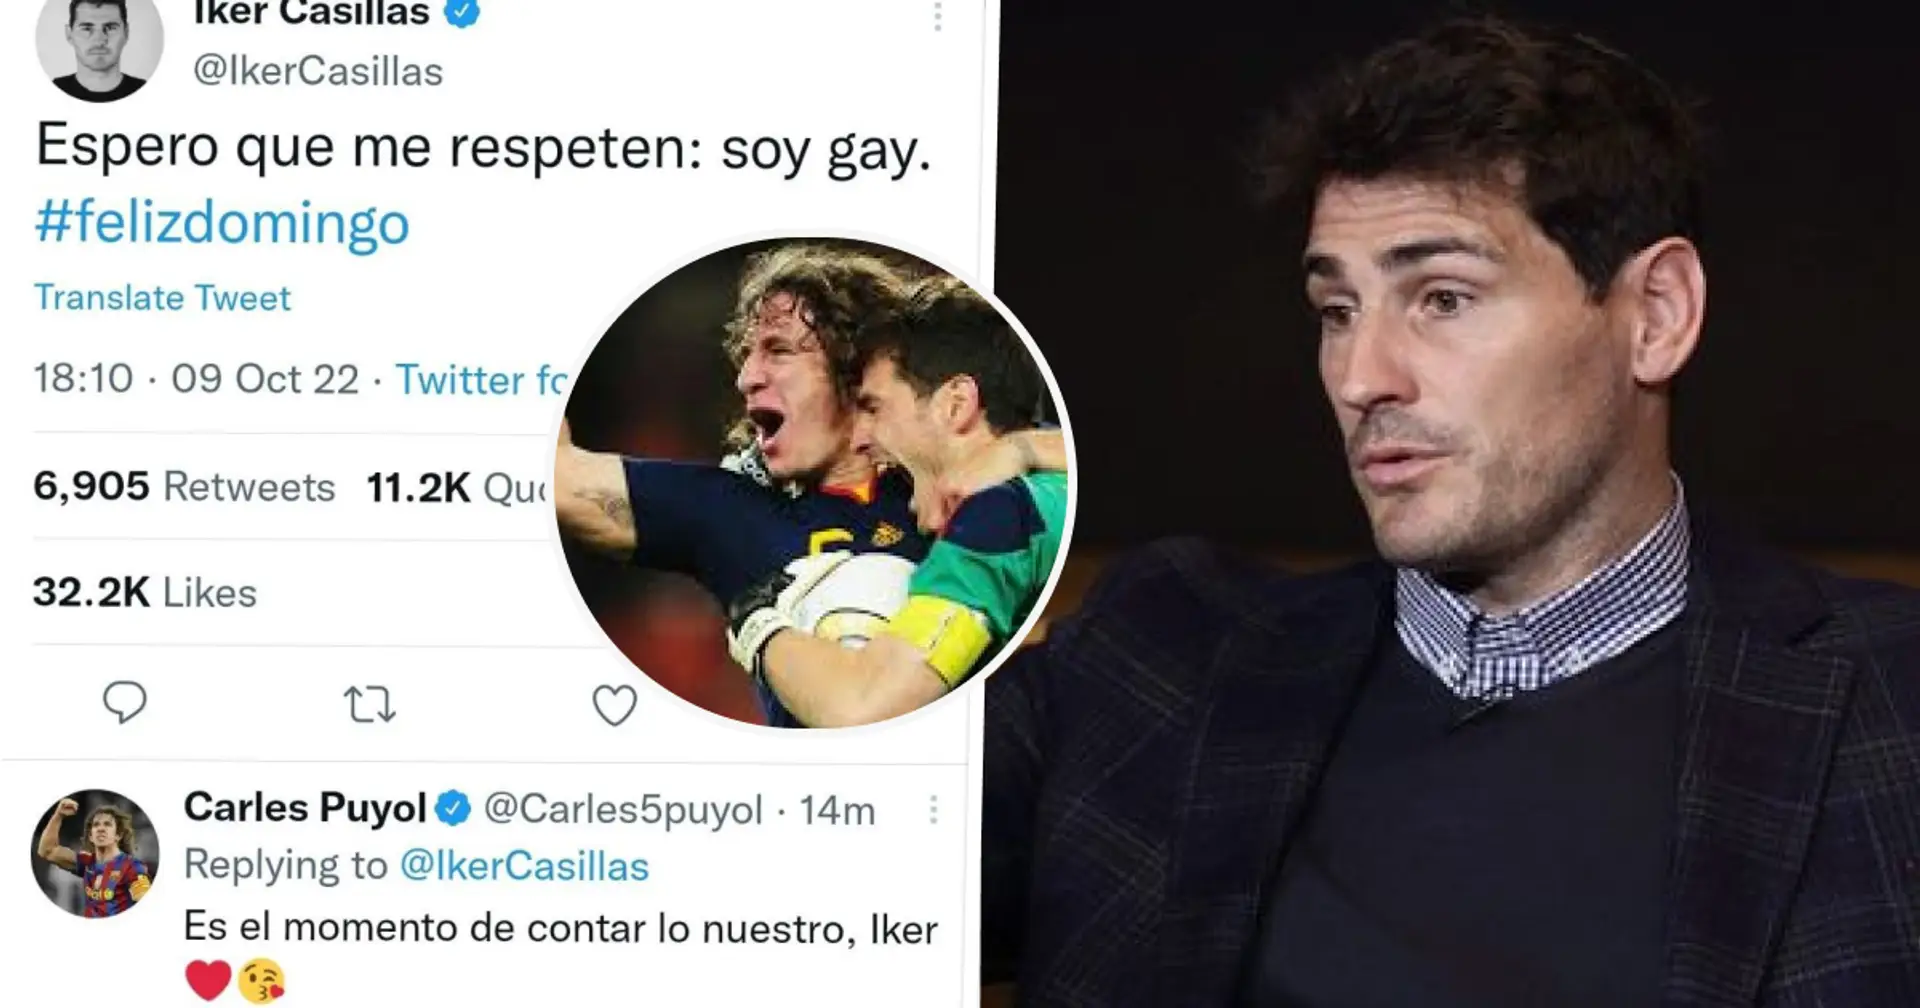 Casillas supprime un tweet provocateur après avoir été critiqué par les fans. Qu'est-il arrivé? Explication